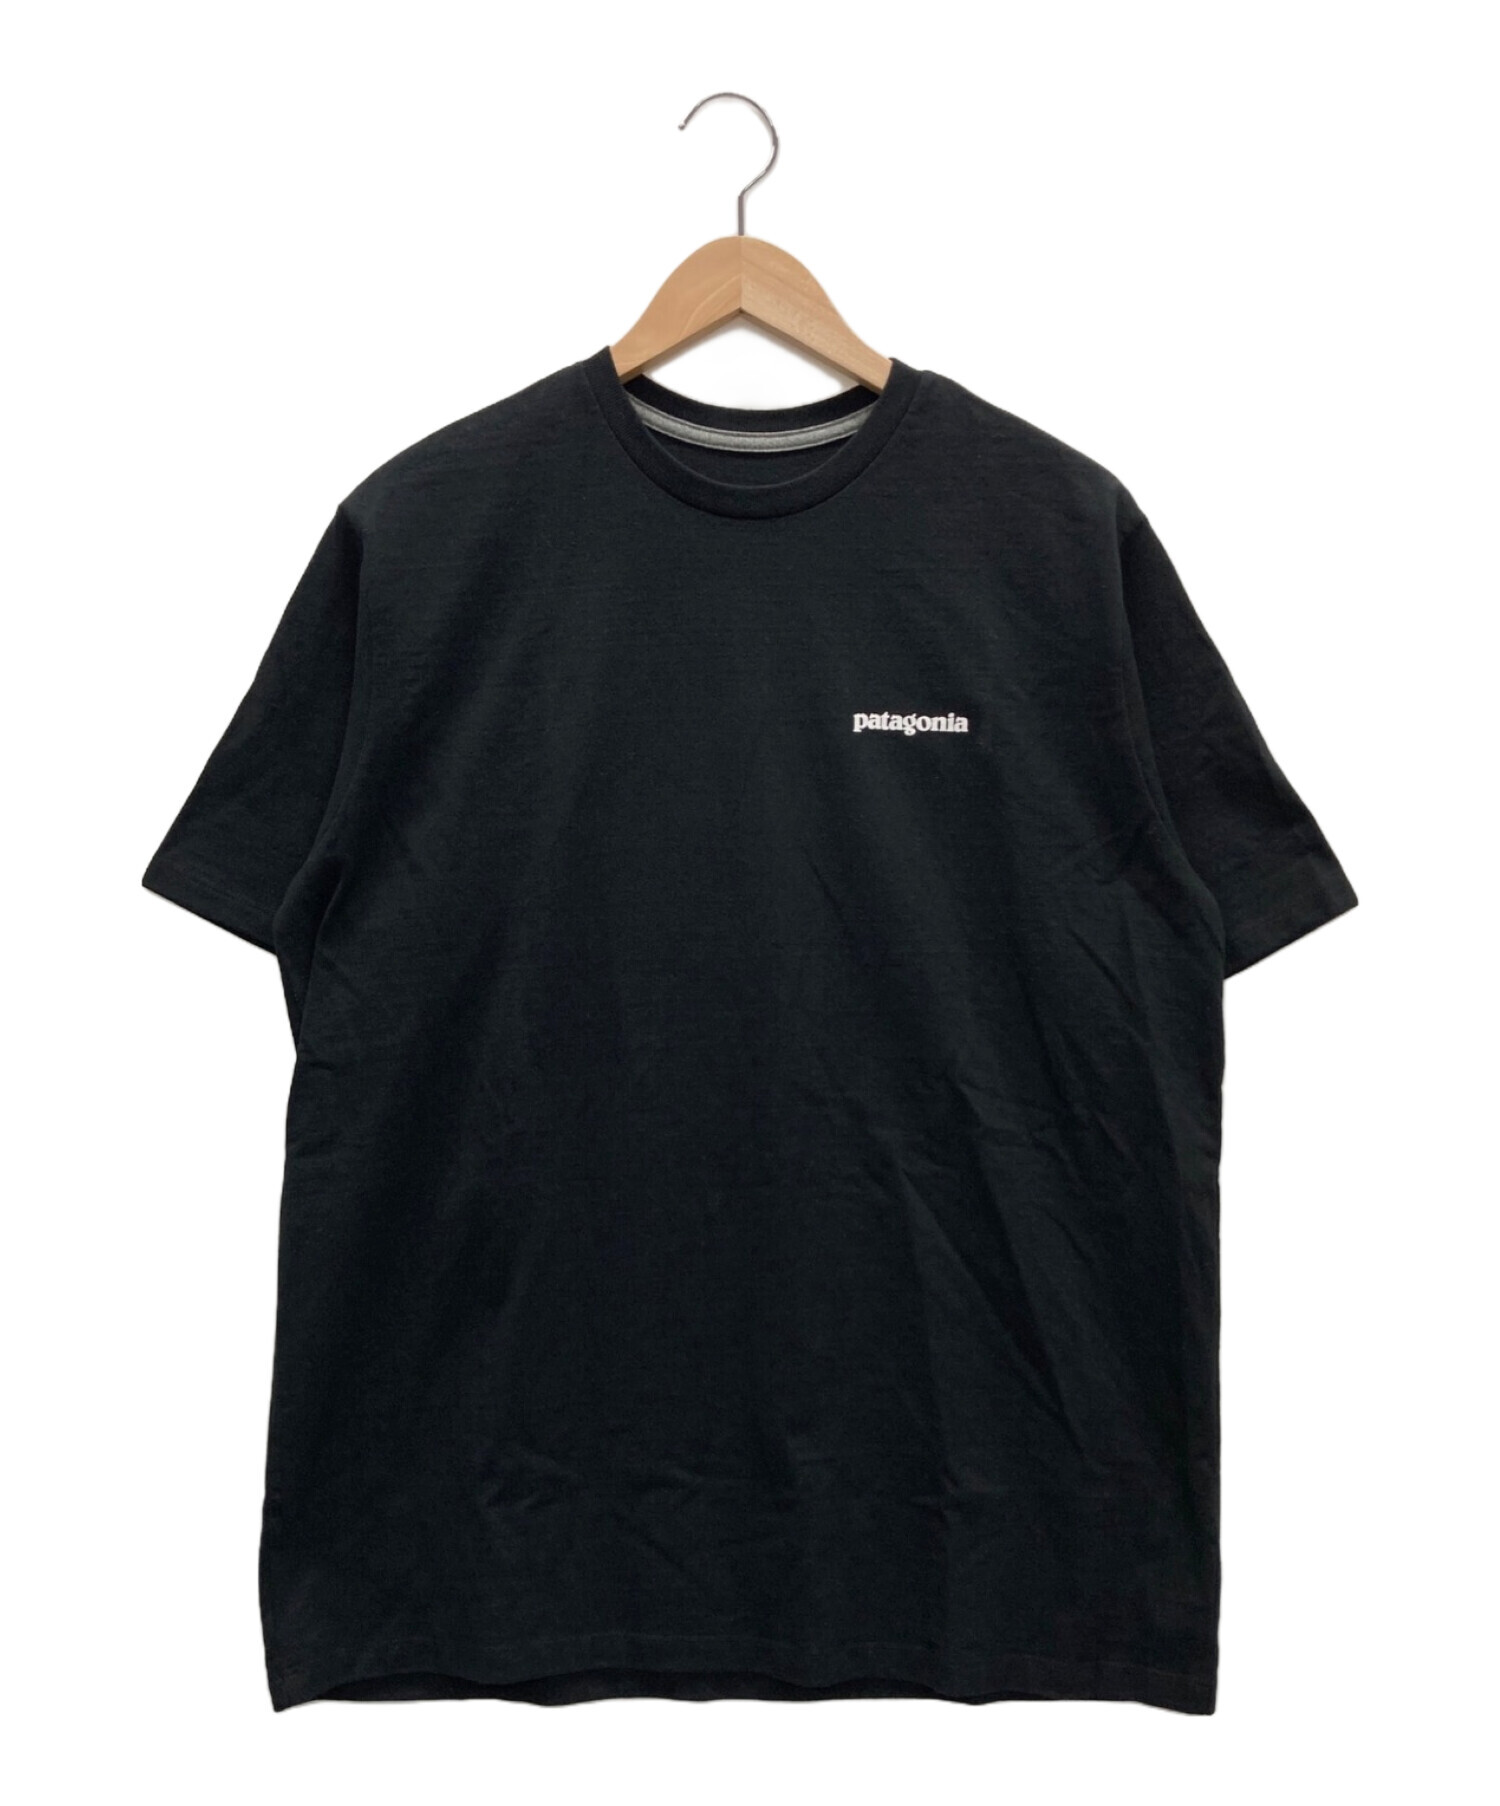 Patagonia (パタゴニア) バックプリントTシャツ ブラック サイズ:M 未使用品